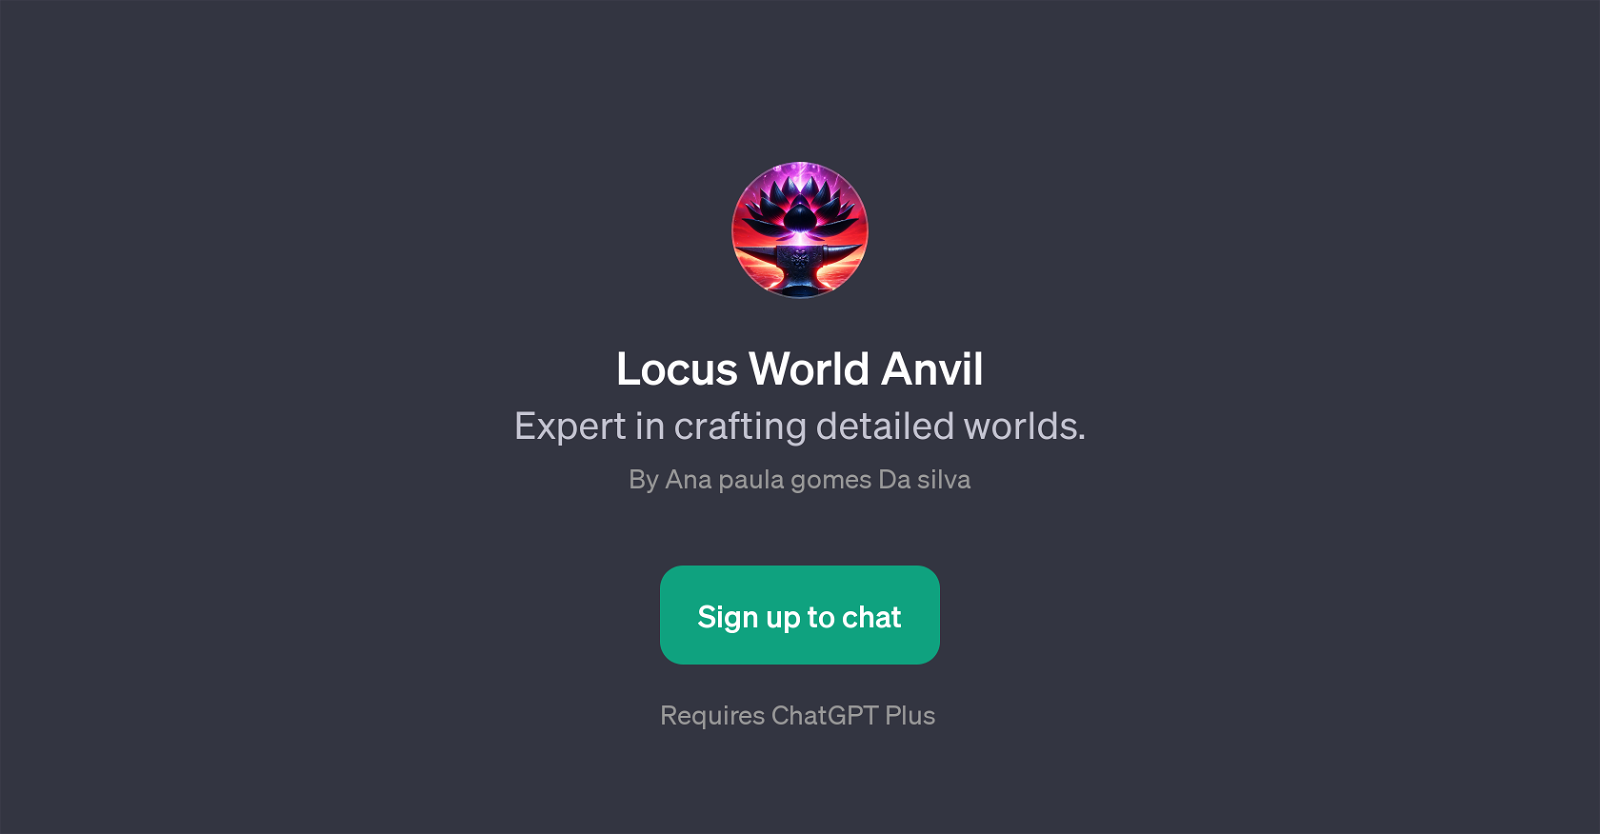 Locus World Anvil website